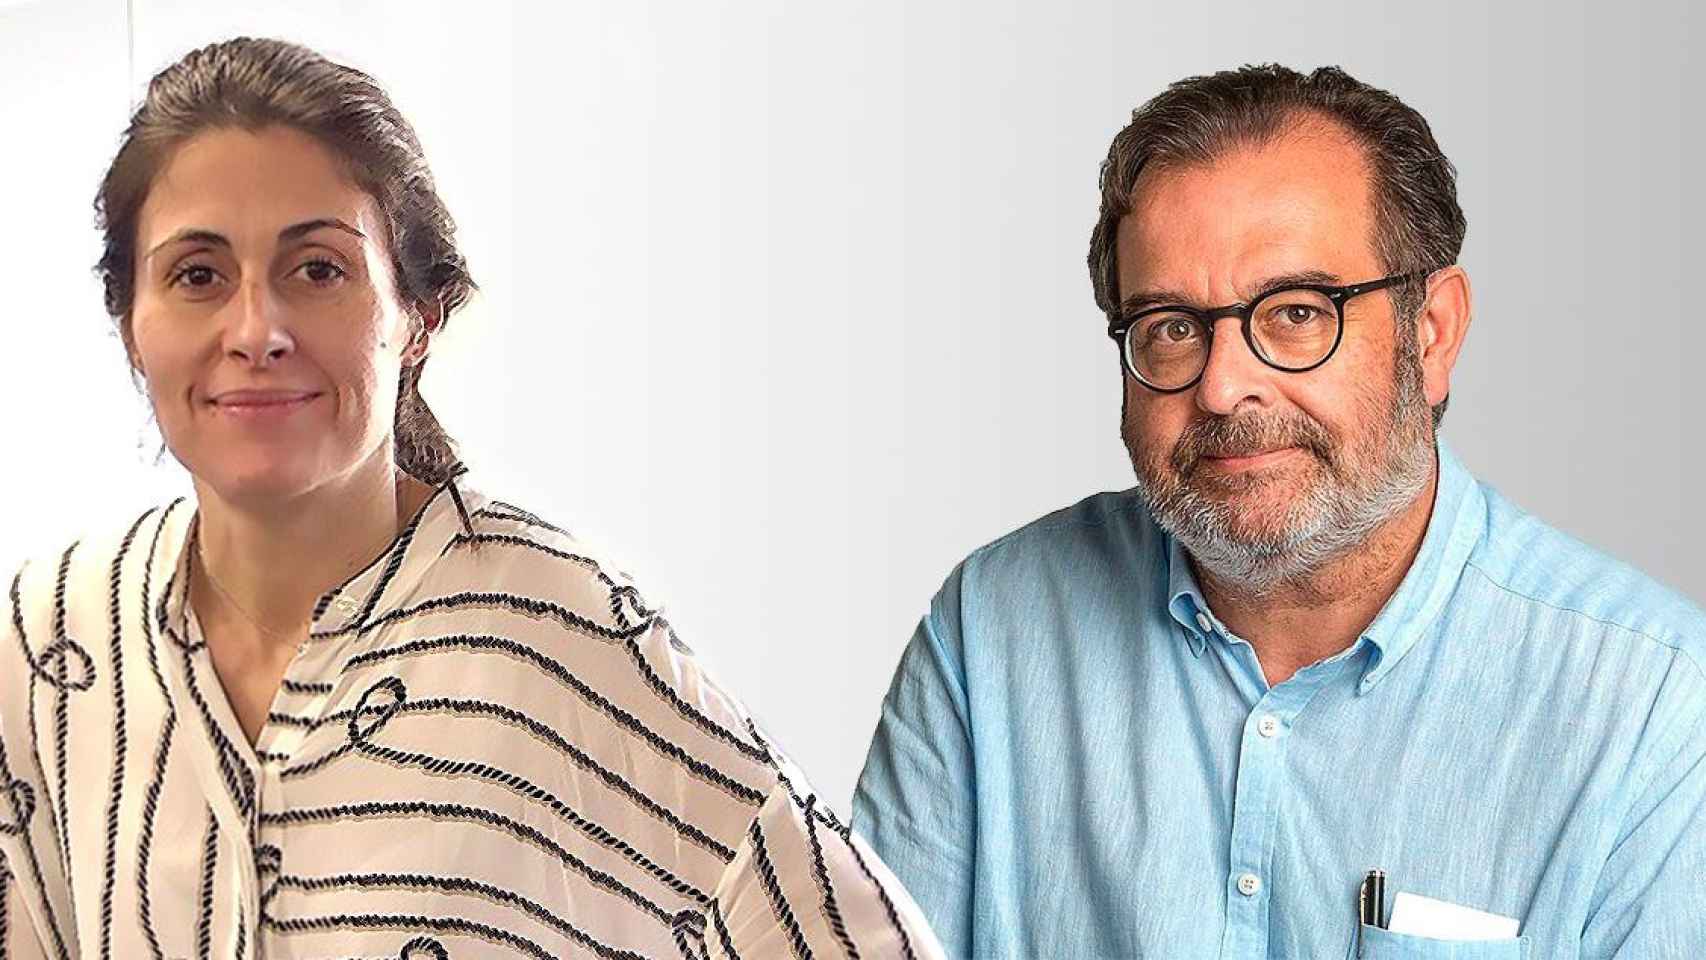 Anna Cristeto, directora de 'El Periódico de Catalunya' durante los últimos meses, y Albert Sáez, su sucesor en el cargo / FOTOMONTAJE DE CG